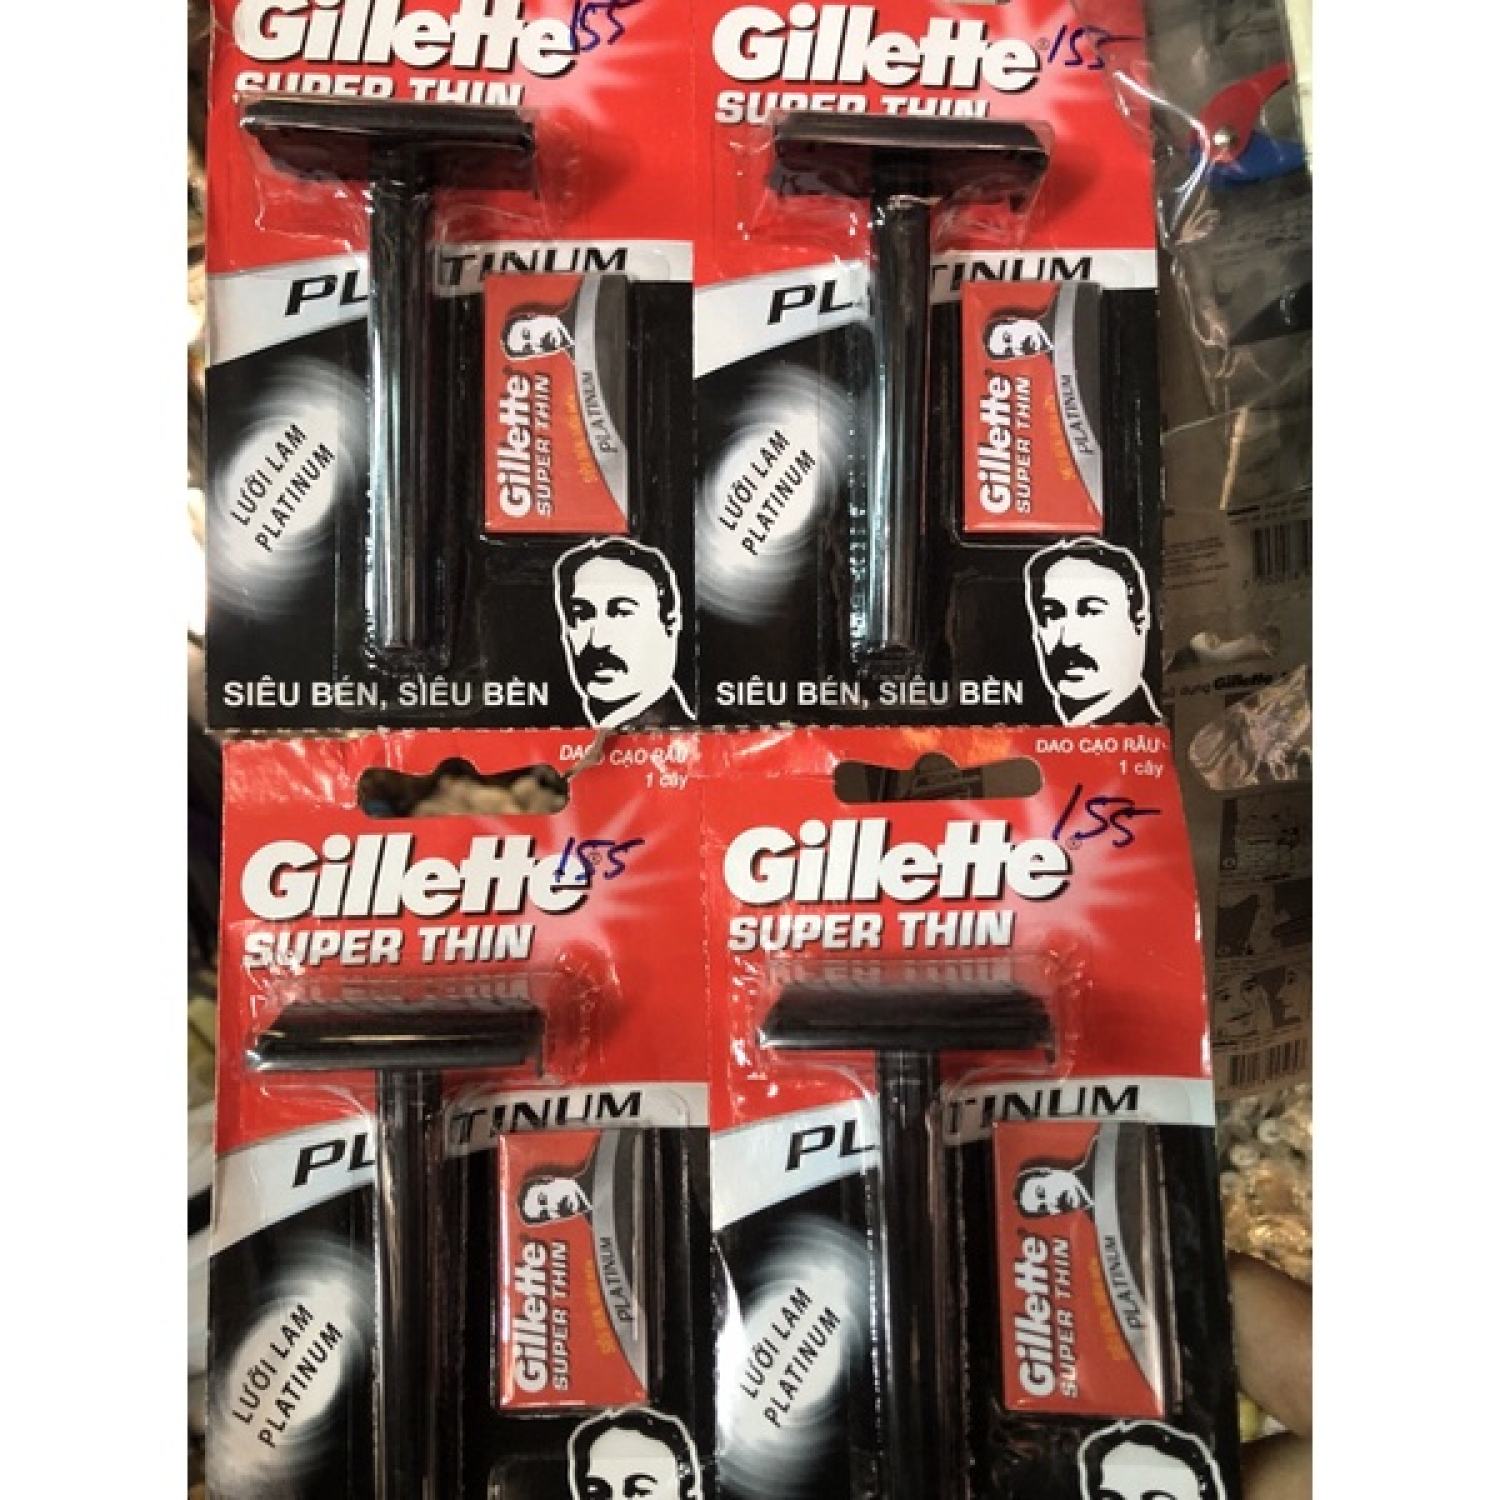 Cạo râu thay lưỡi có tặng kèm một lưỡi cạo chính hãng Gillette dao cạo thay lưỡi